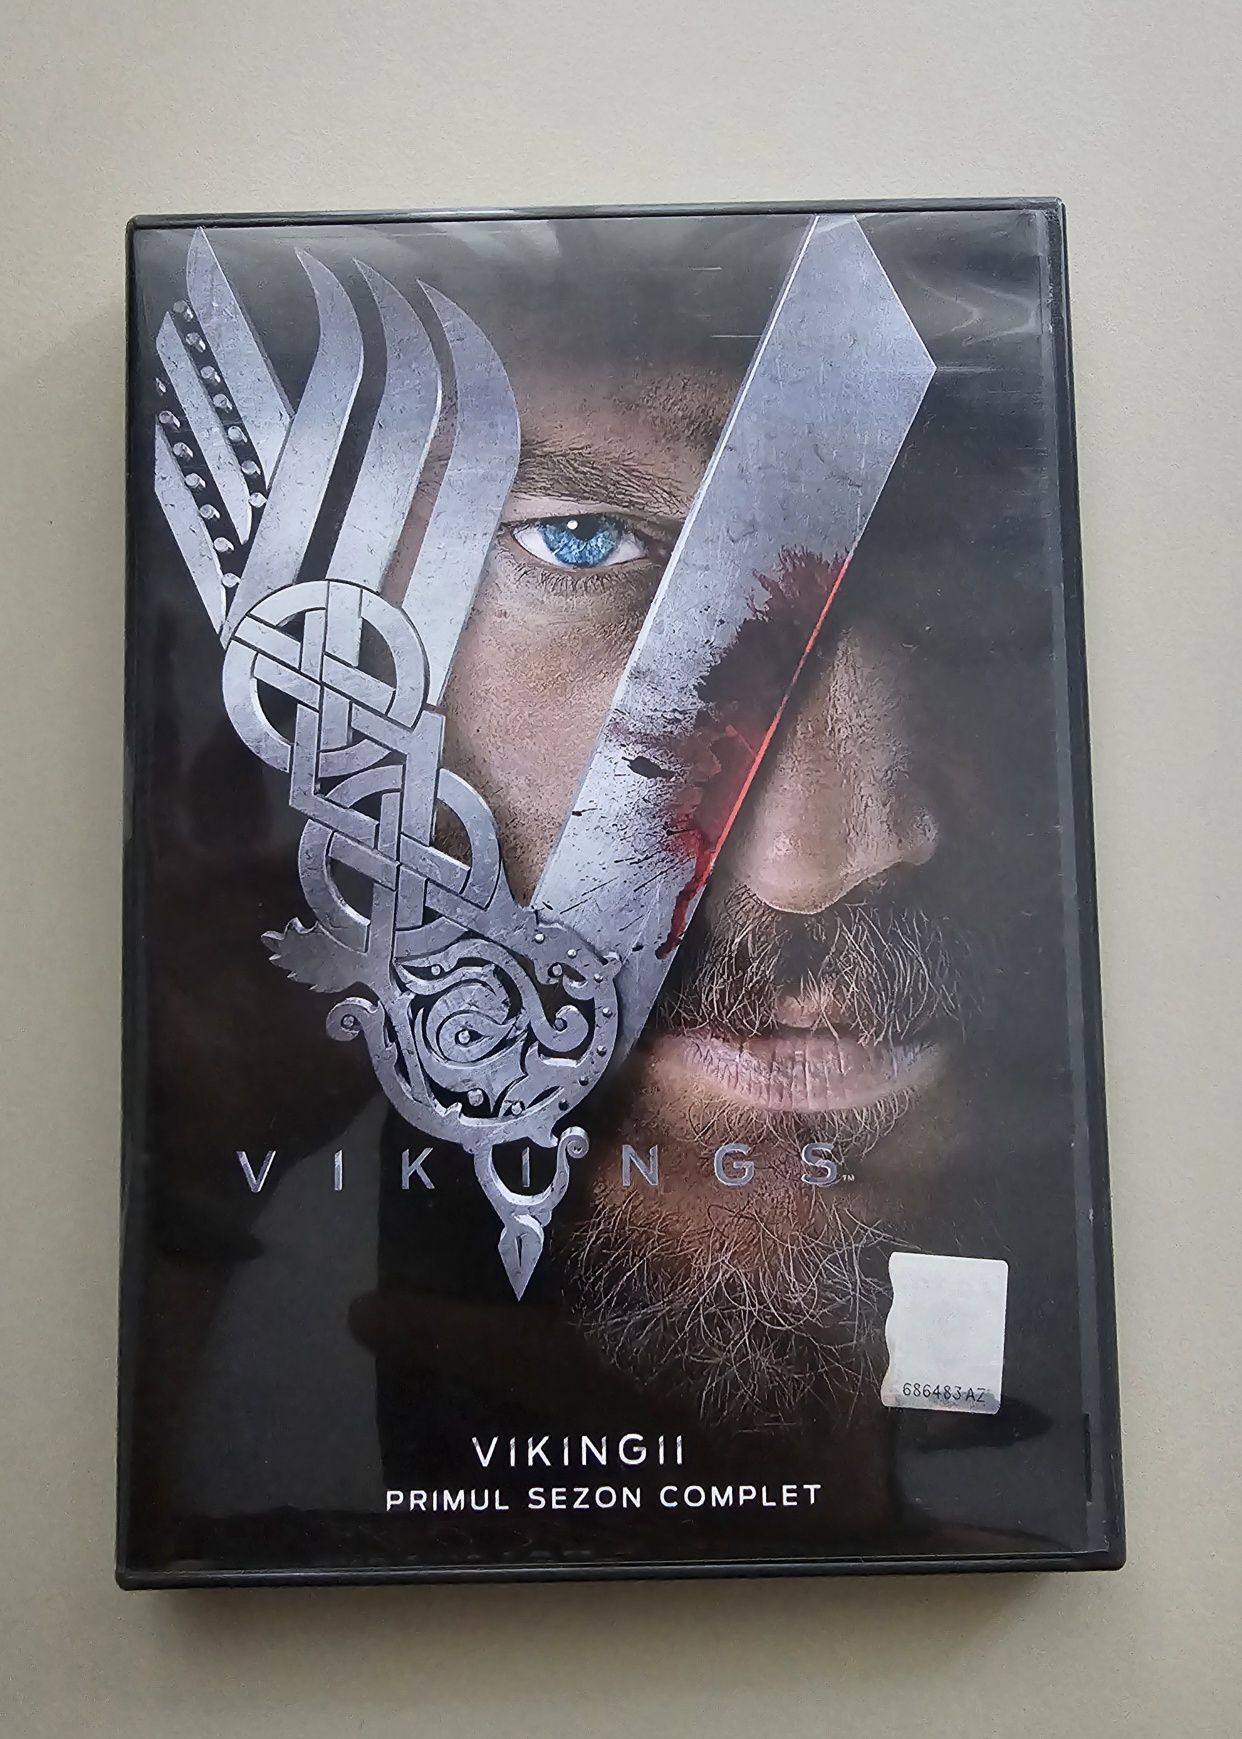 Serial VIKINGS (Vikingii) - Sezonul 1 complet